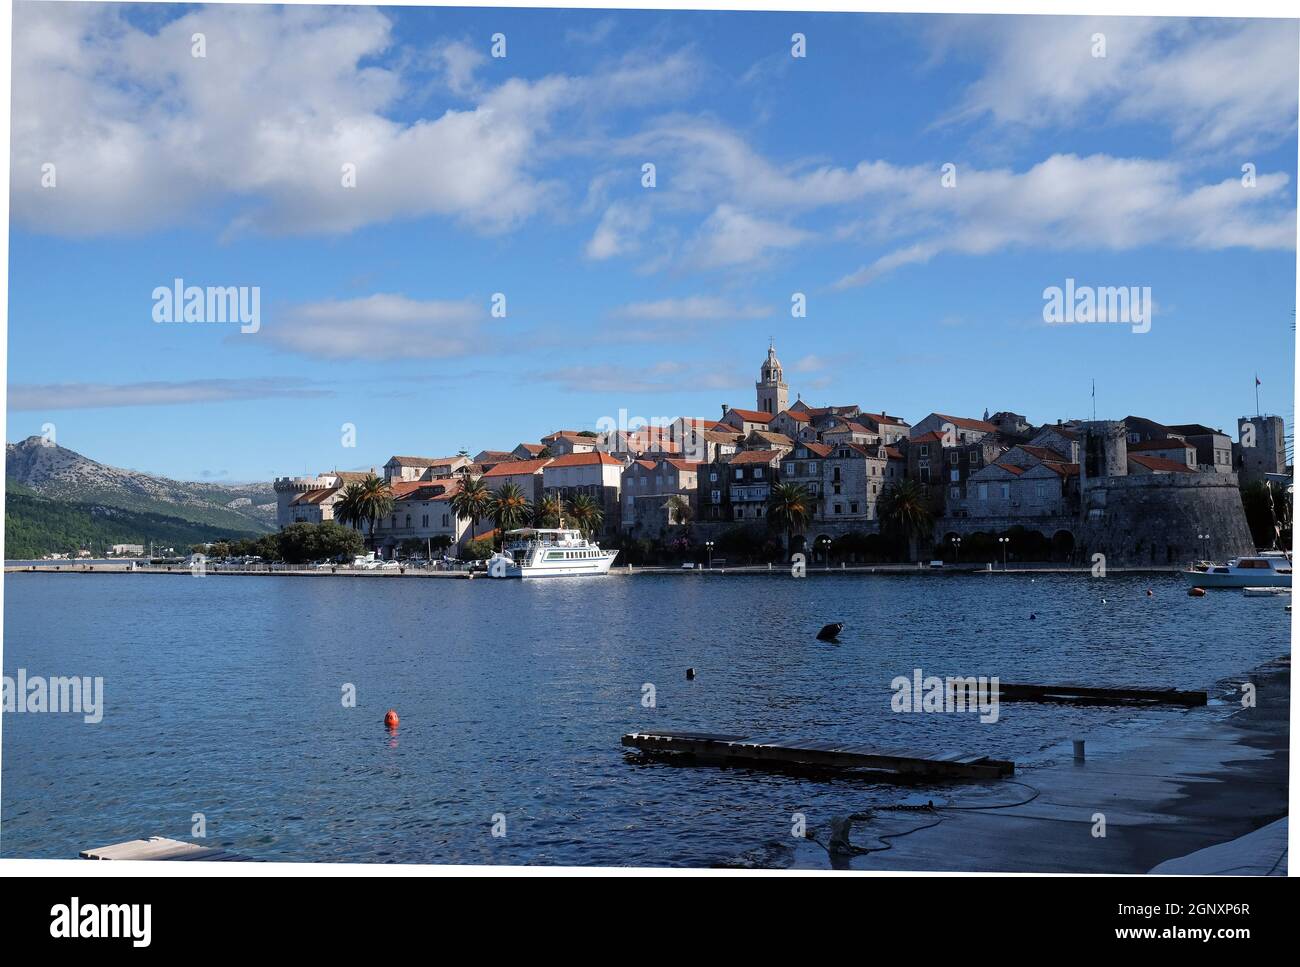 Vue sur le front de mer dans la ville médiévale pittoresque de Dalmatie, Korcula, Croatie Banque D'Images